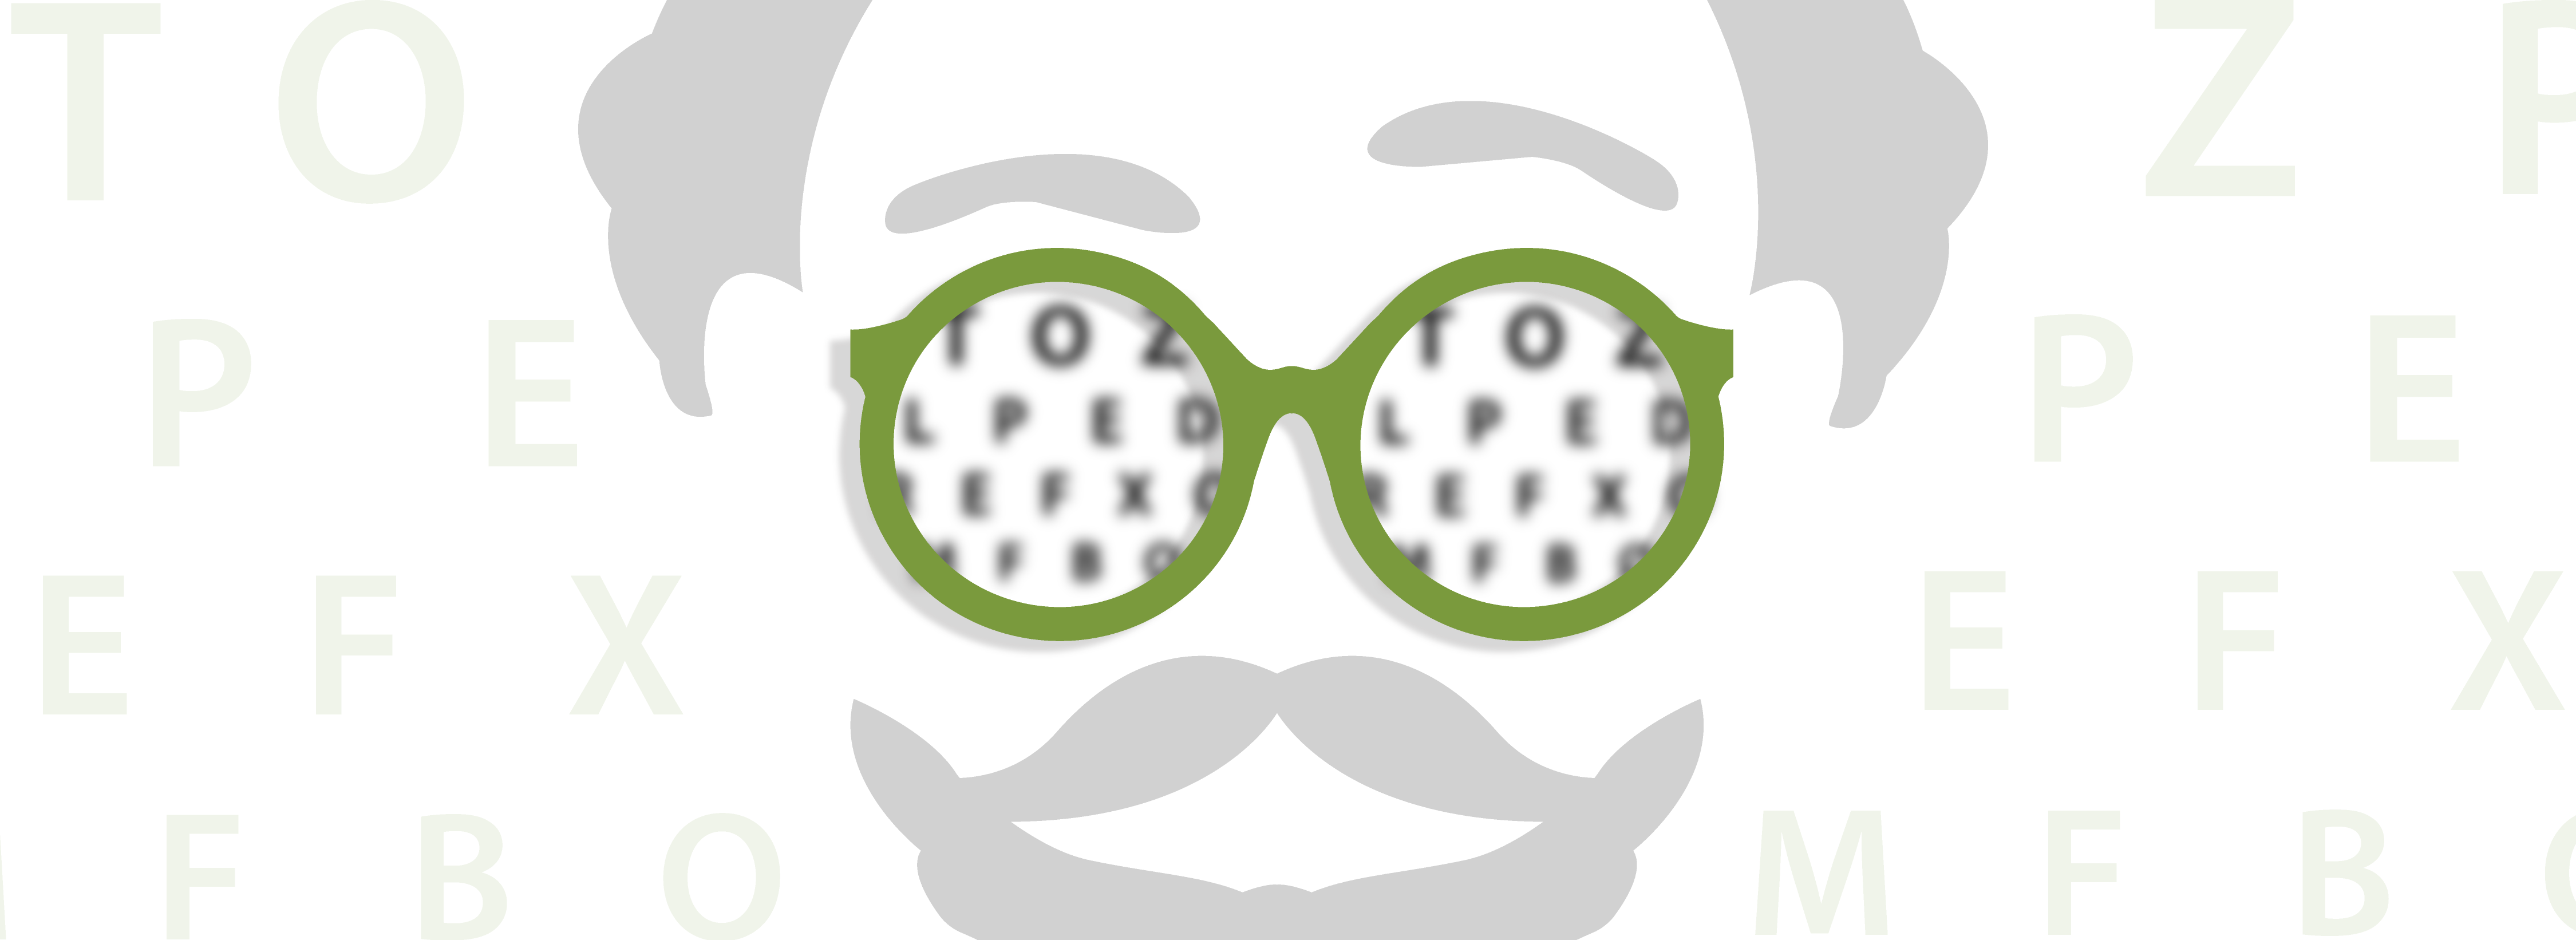 Illustration eines Menschen mit Vollbart. Der Mensch hat eine grüne Brille auf. In den Gläsern sind verschwommene Buchstaben.